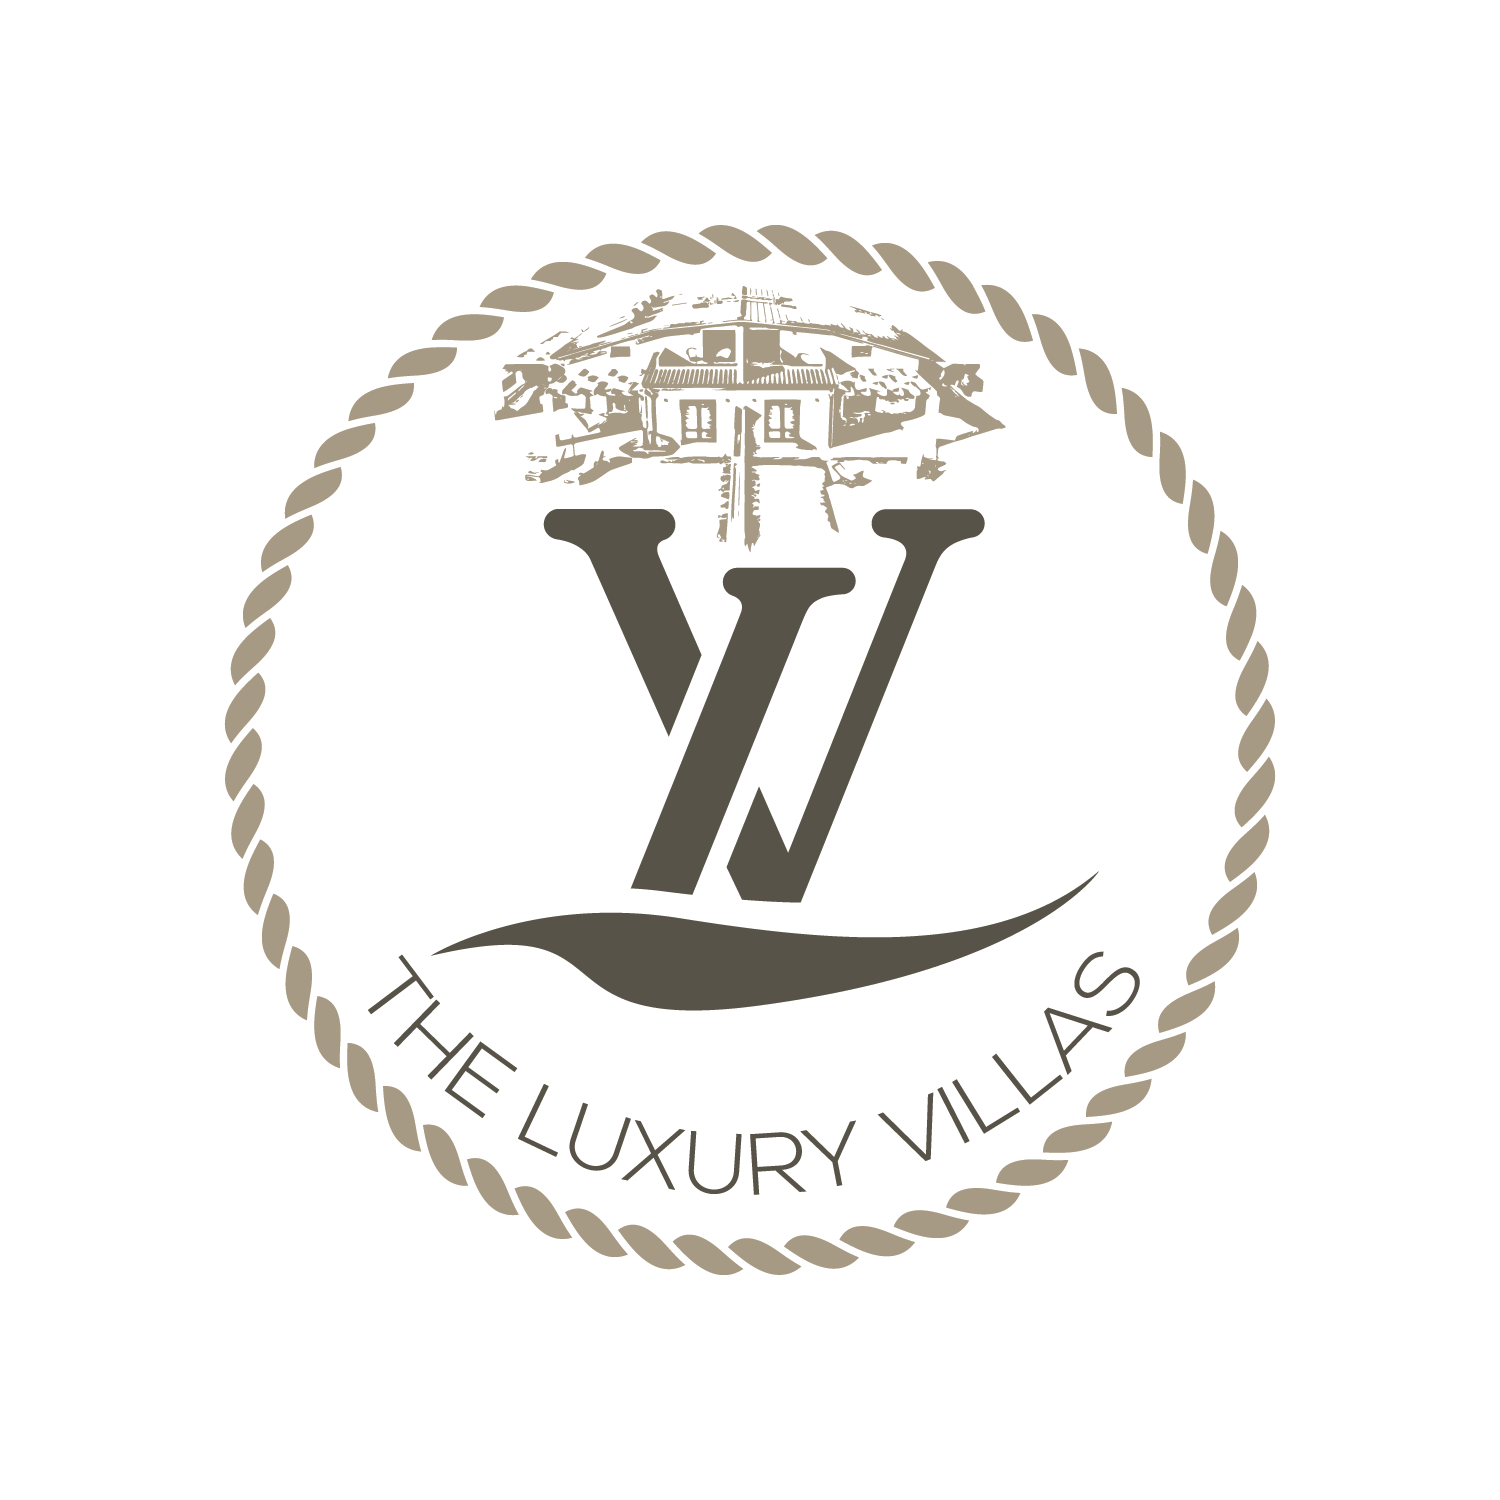 The Luxury Villas